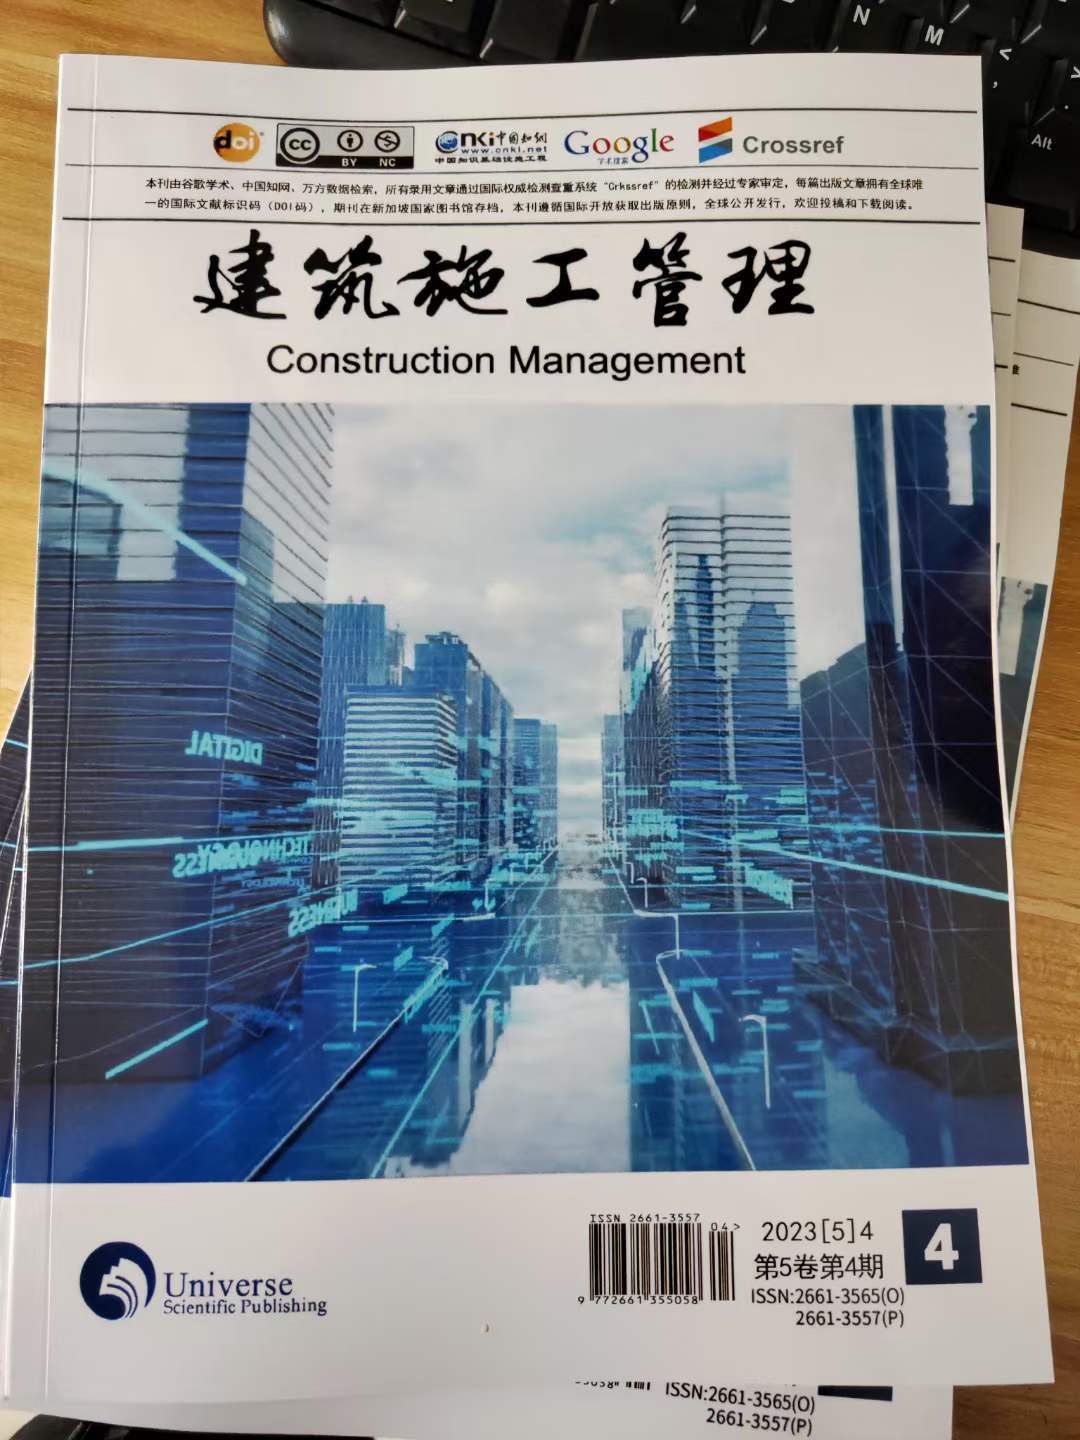  建筑施工管理（中文国际期刊）